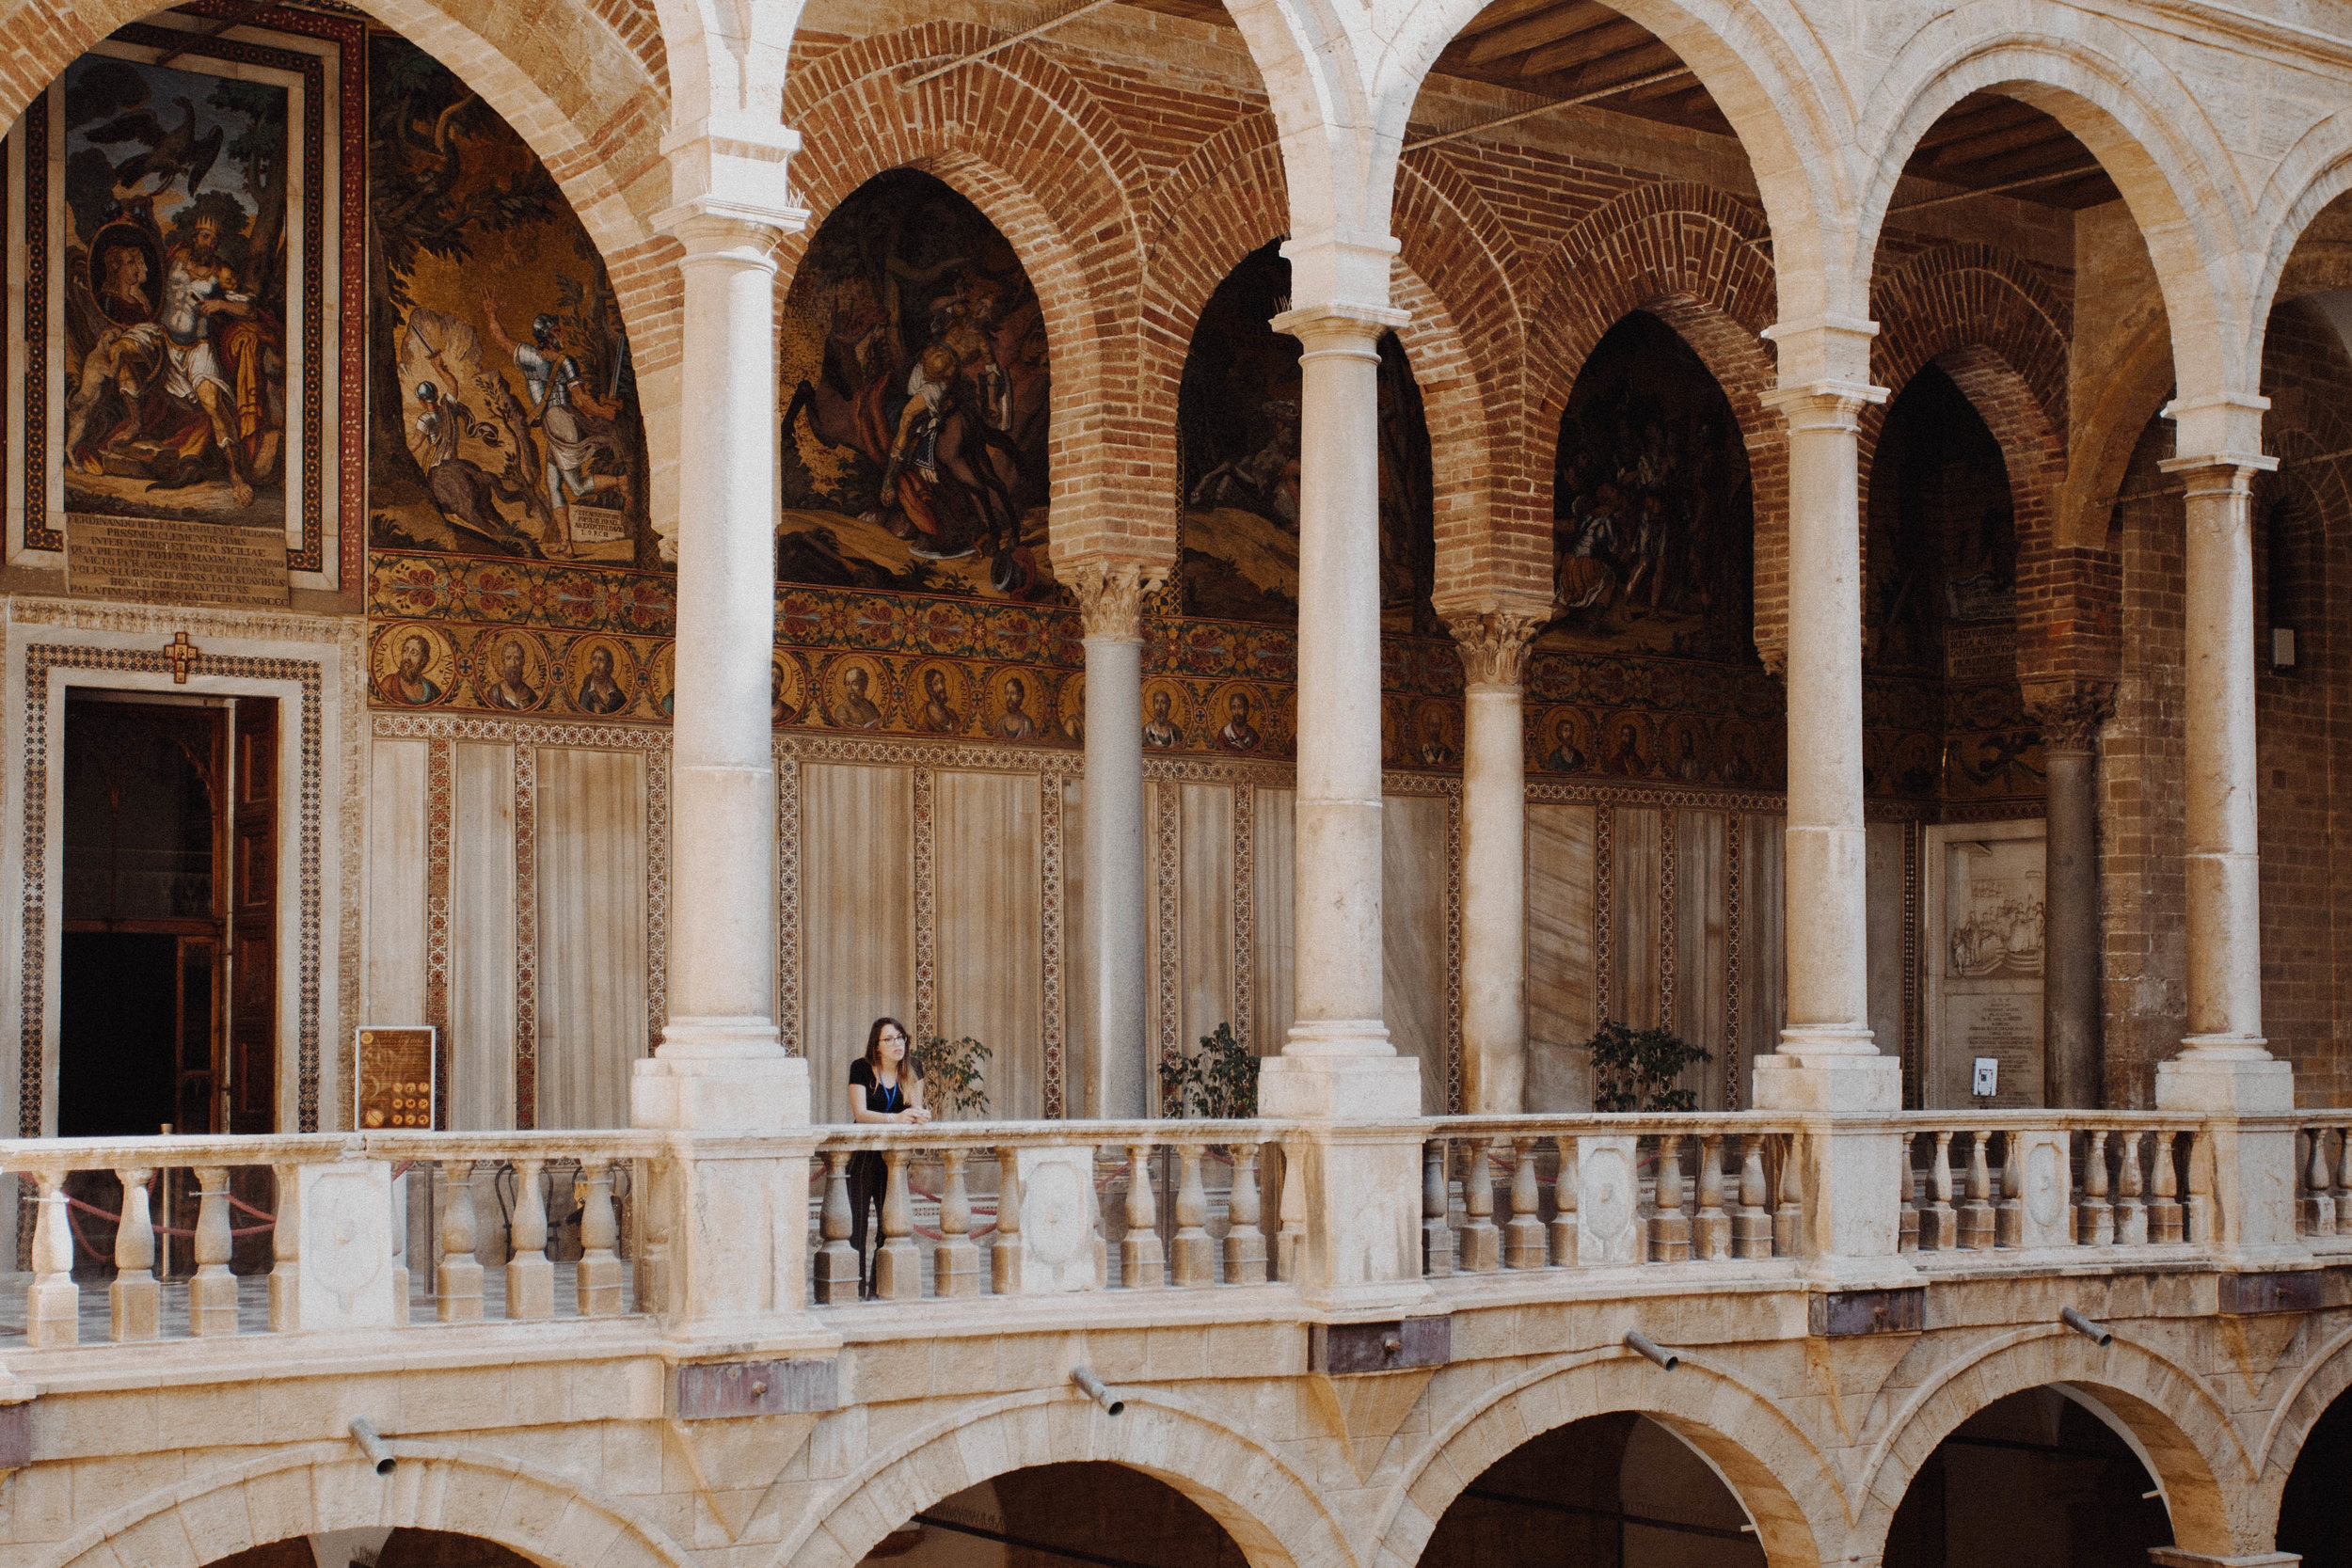 002 - Palazzo Reale - Cappella Palatina.JPG